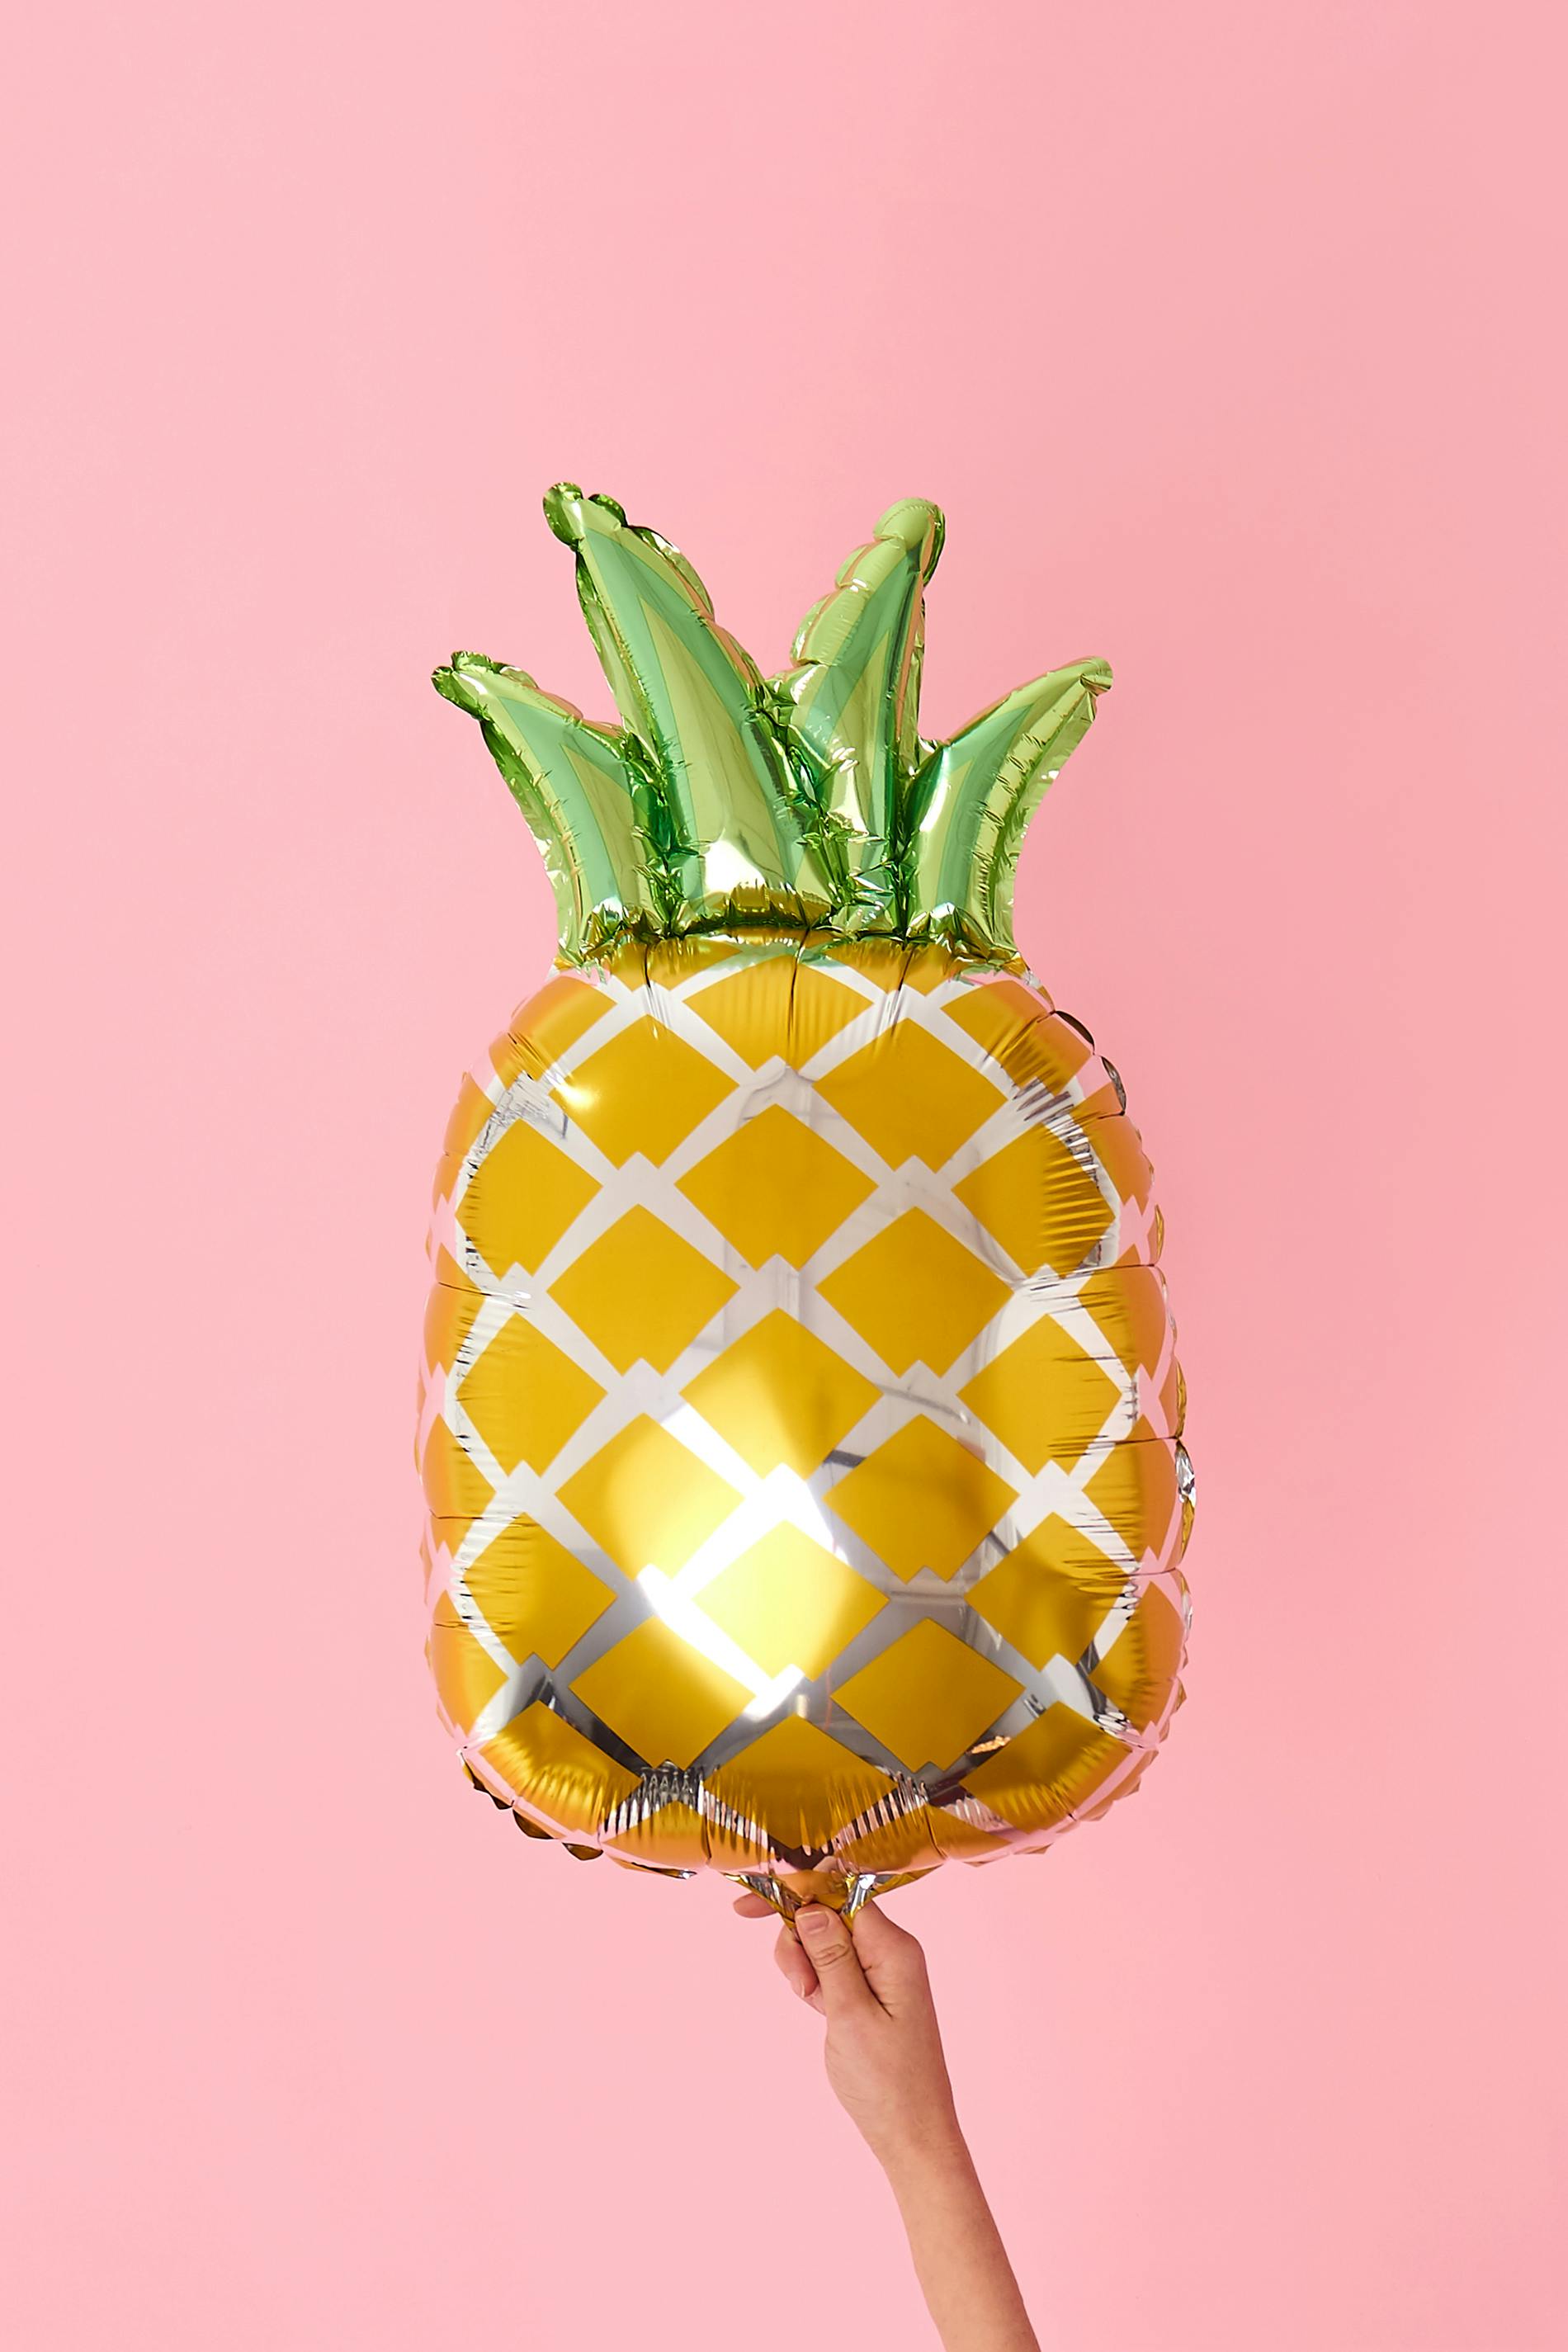 Pineapple balloon